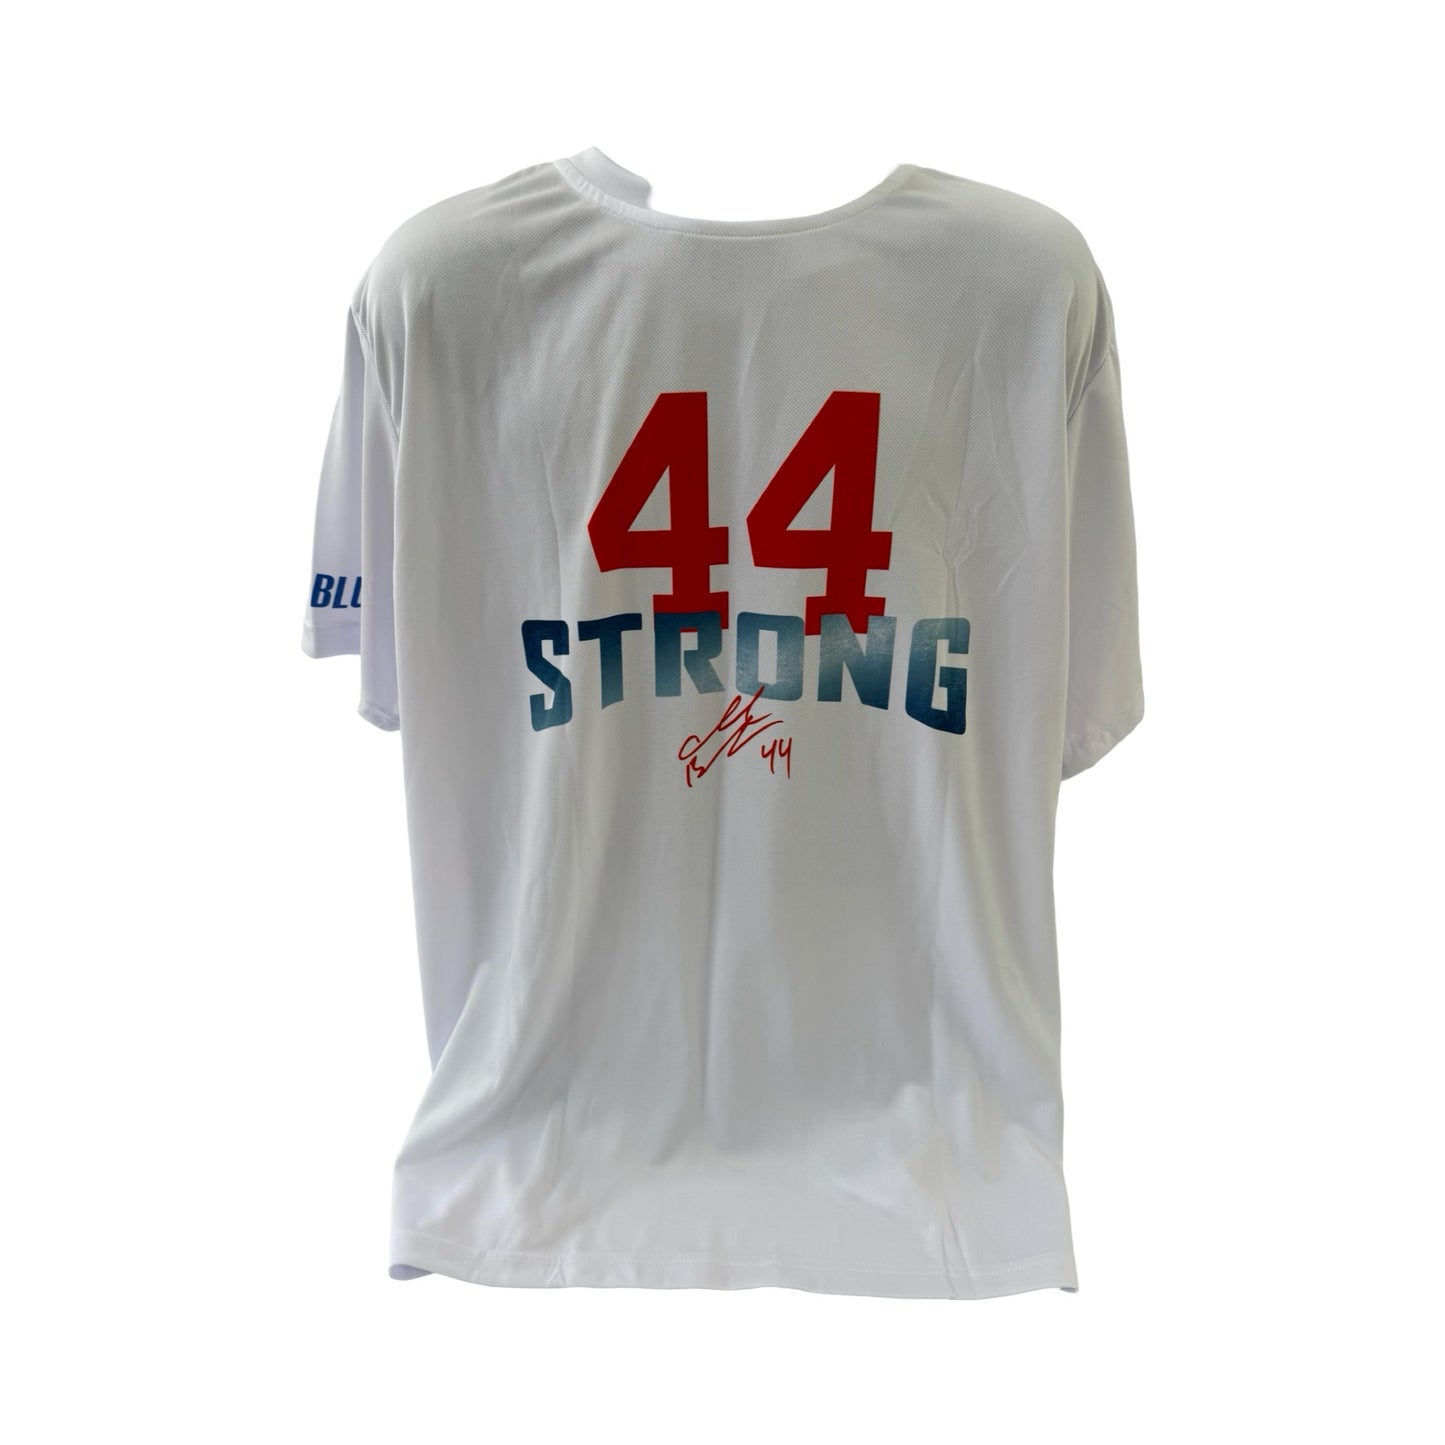 Ahmad Bradshaw 44 Strong Big Logo White T-Shirt